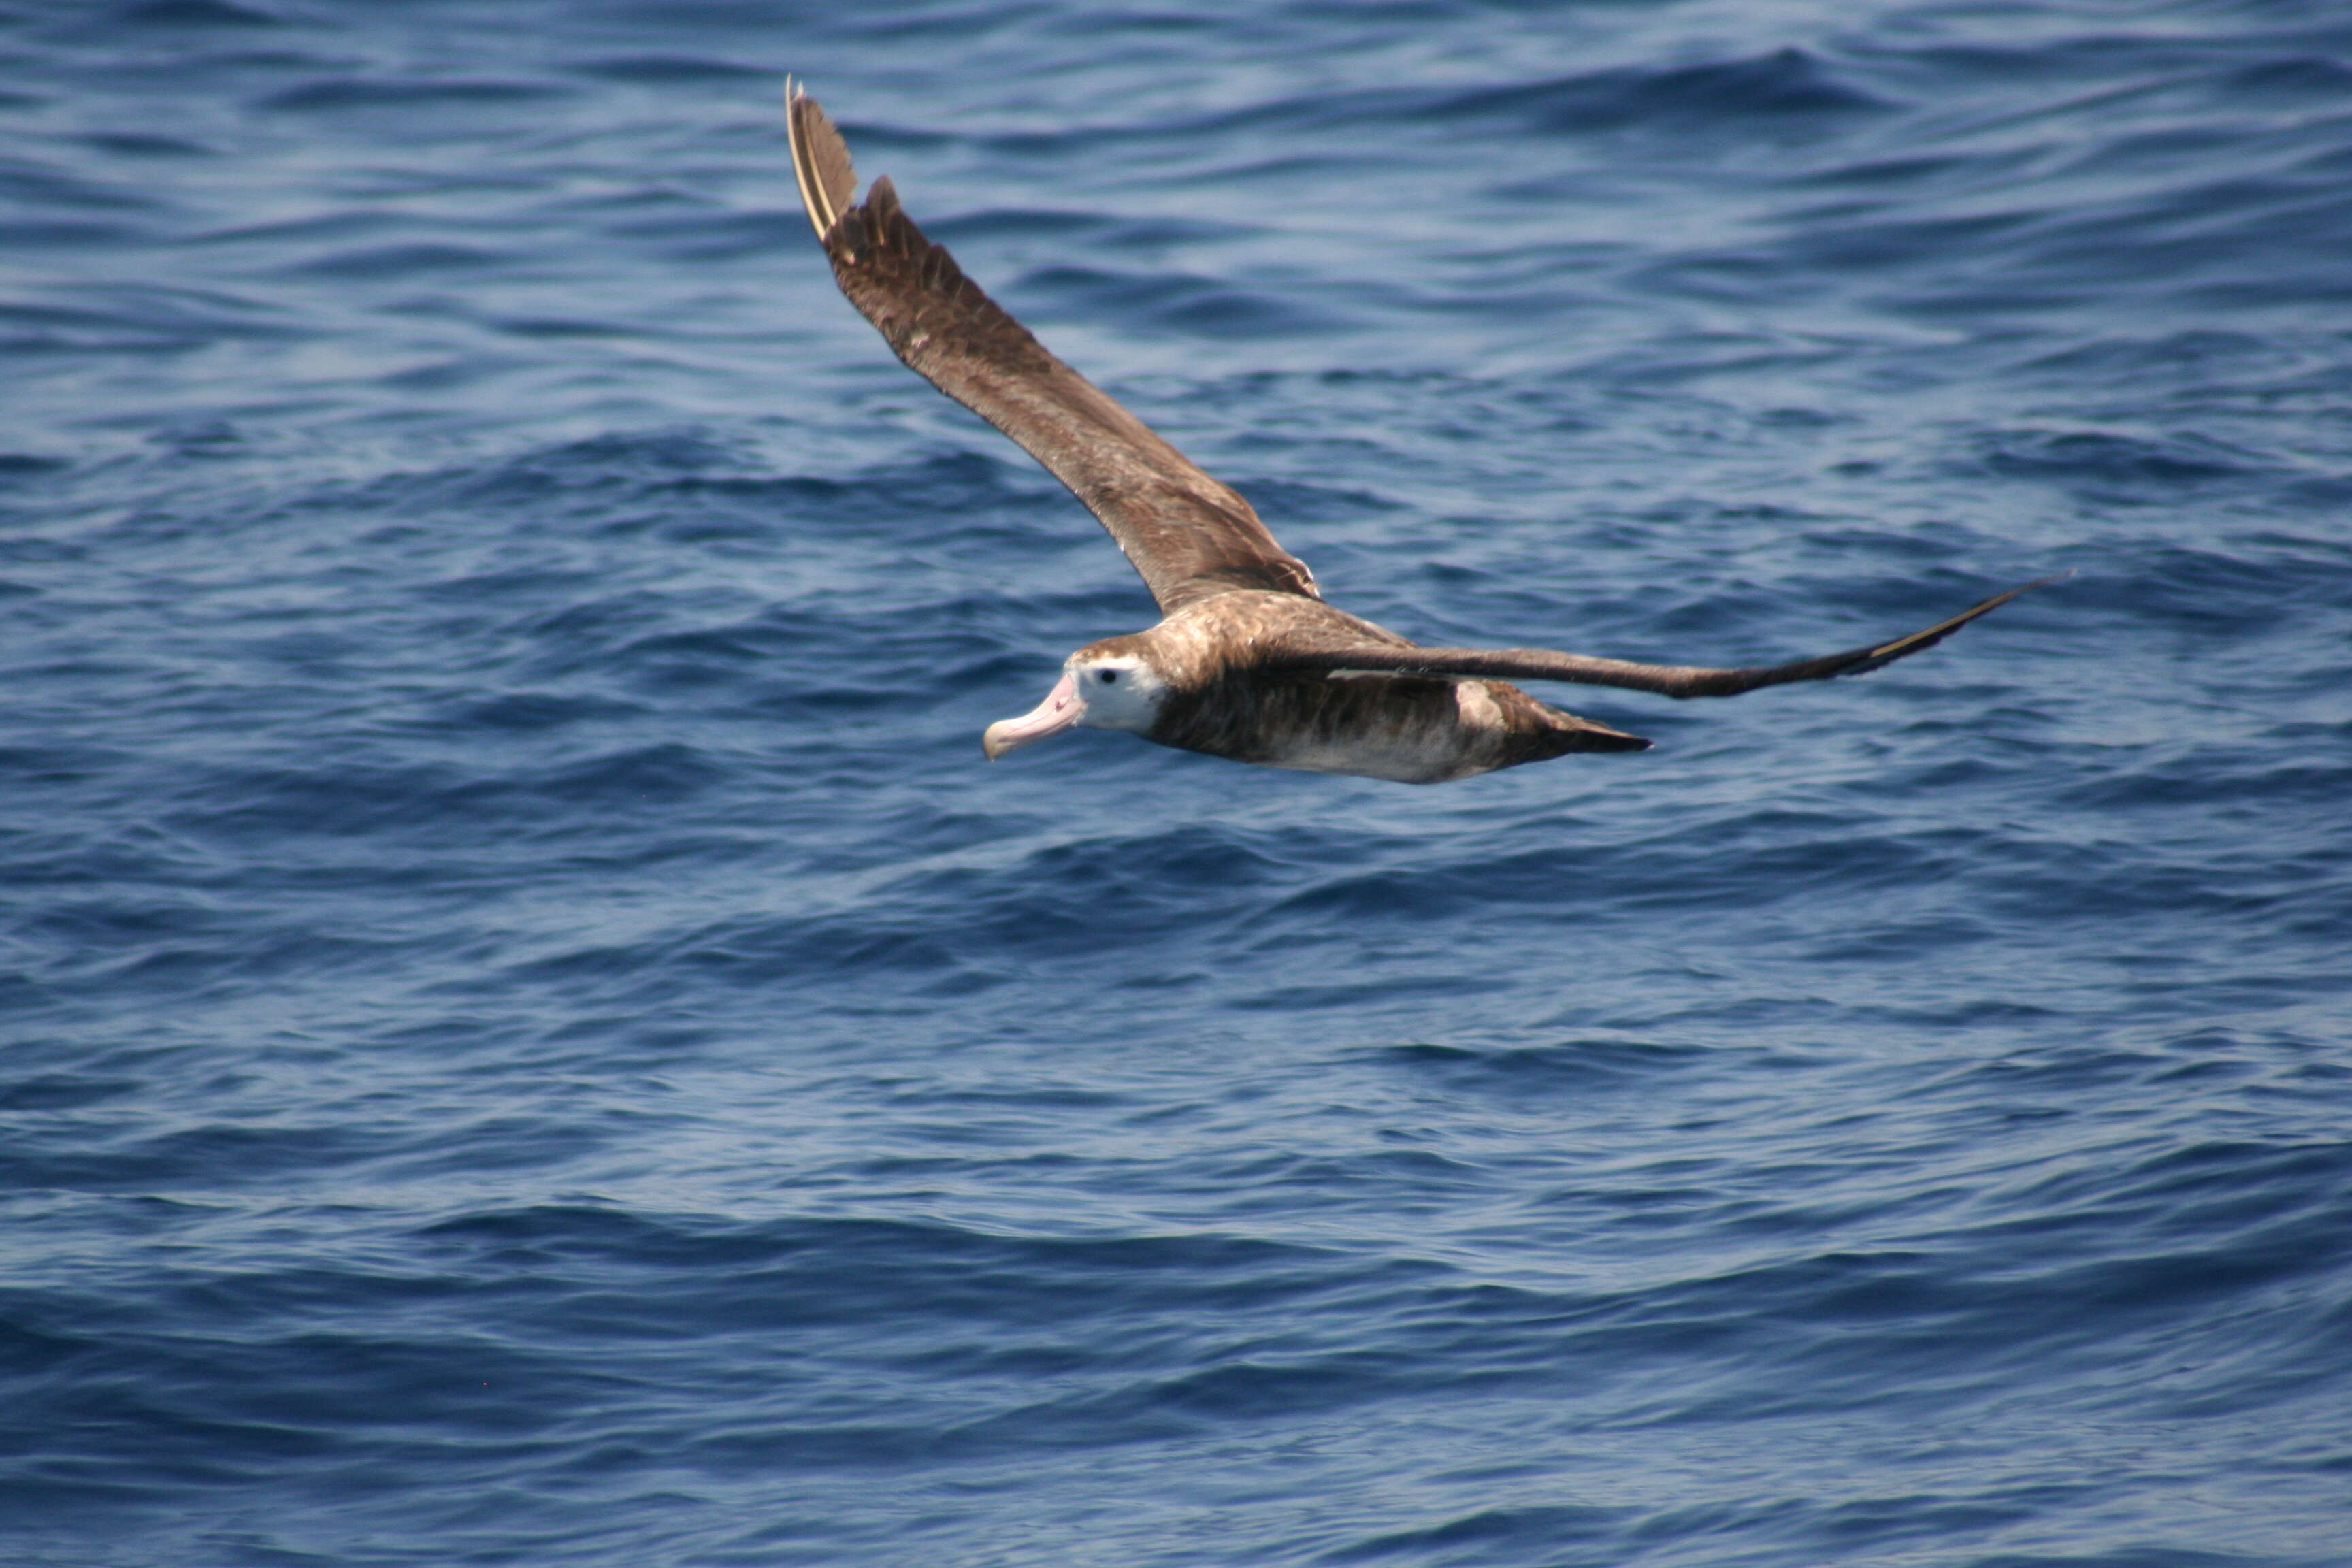 Image of Antipodean Albatross